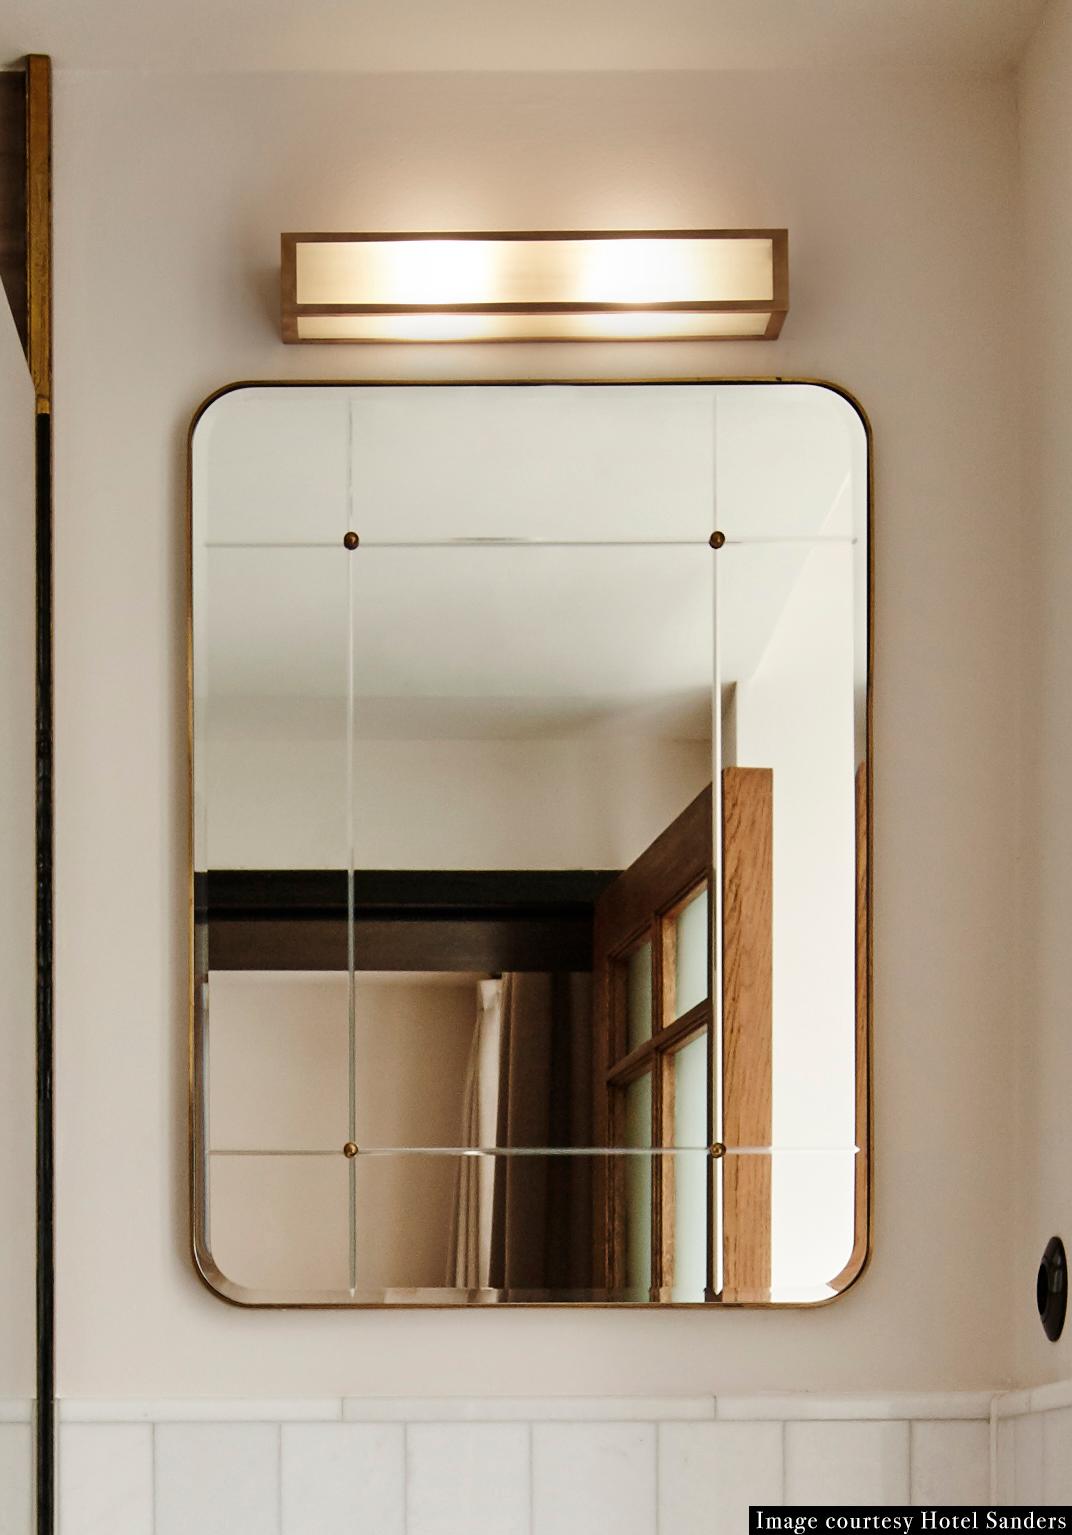 Miroir de salle de bain pour Sanders par Lind + Almond en verre taillé et laiton, grand miroir en verre taillé et laiton patiné à la main, avec clous en laiton. Développé spécialement pour Sanders, le premier hôtel de luxe de Copenhague.

Disponible